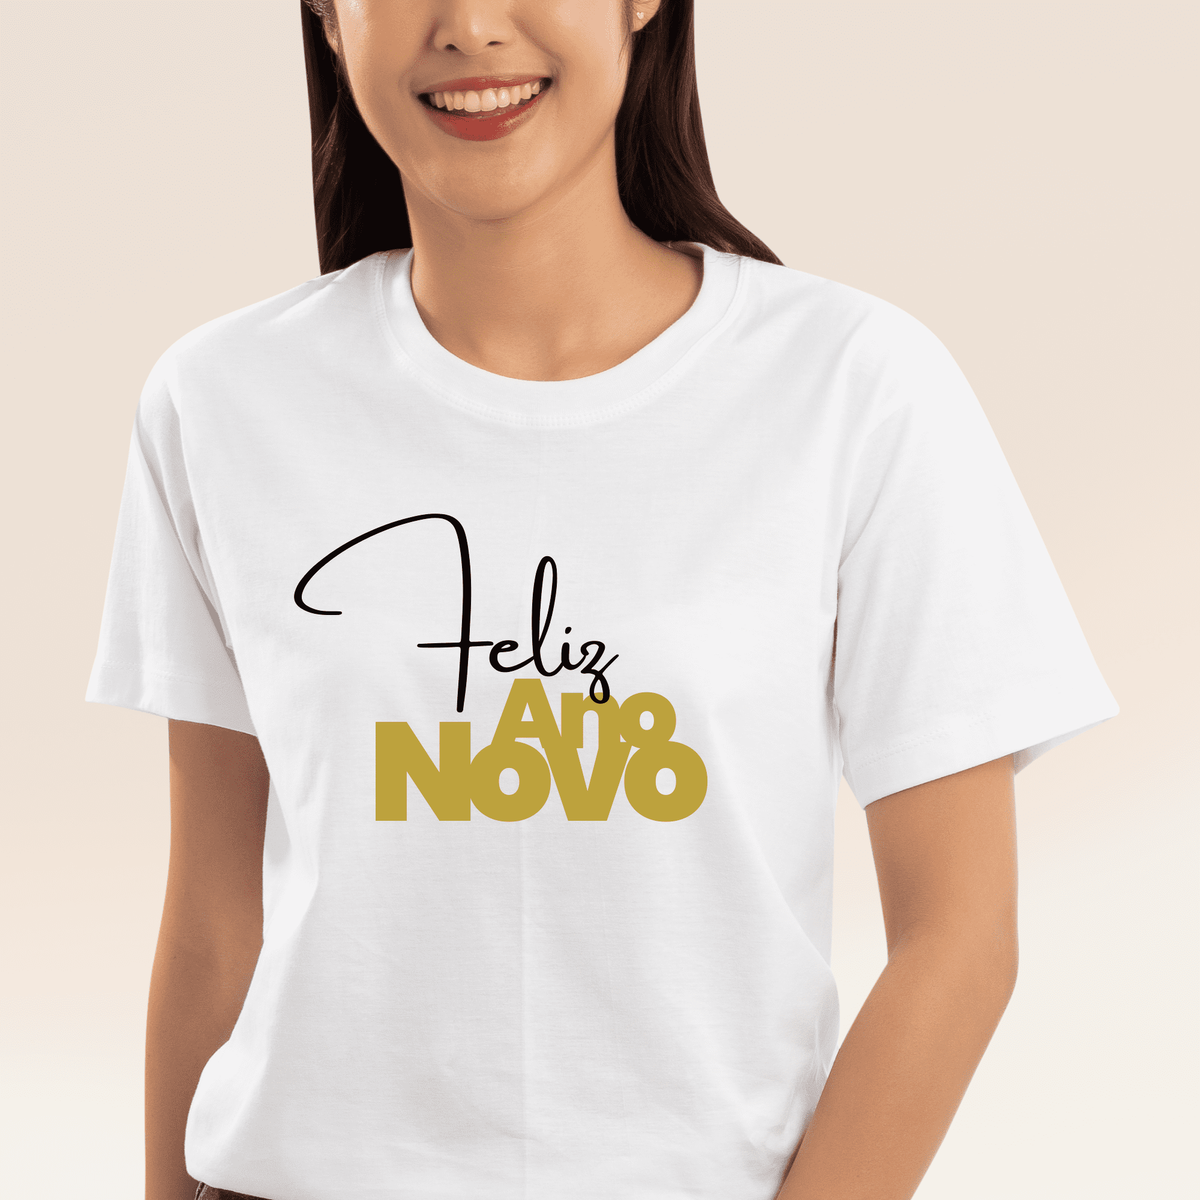 Nome do produto: Camiseta Feminina T-shirt Coleção Fim De Ano